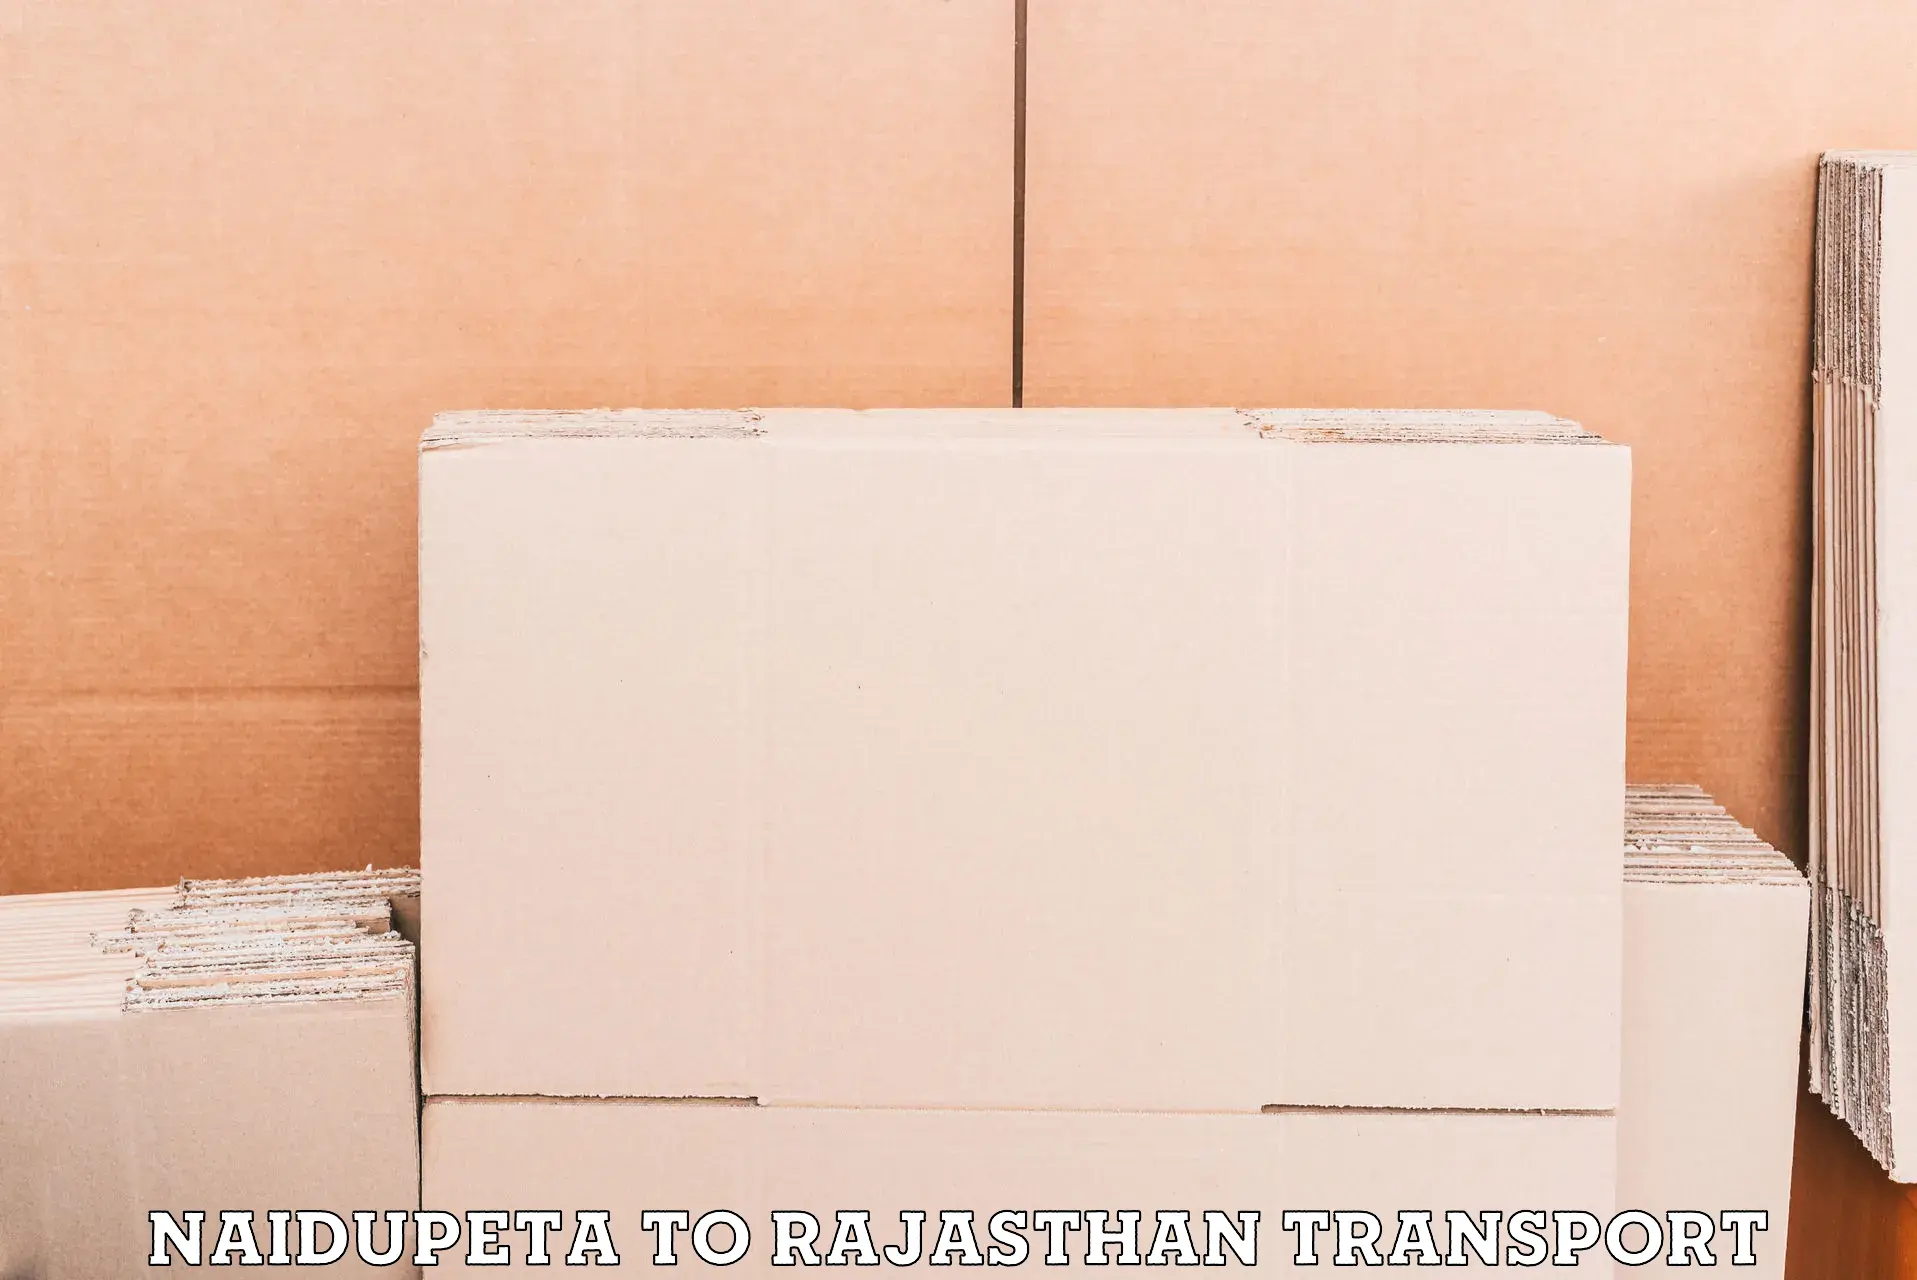 Lorry transport service Naidupeta to Rajasthan